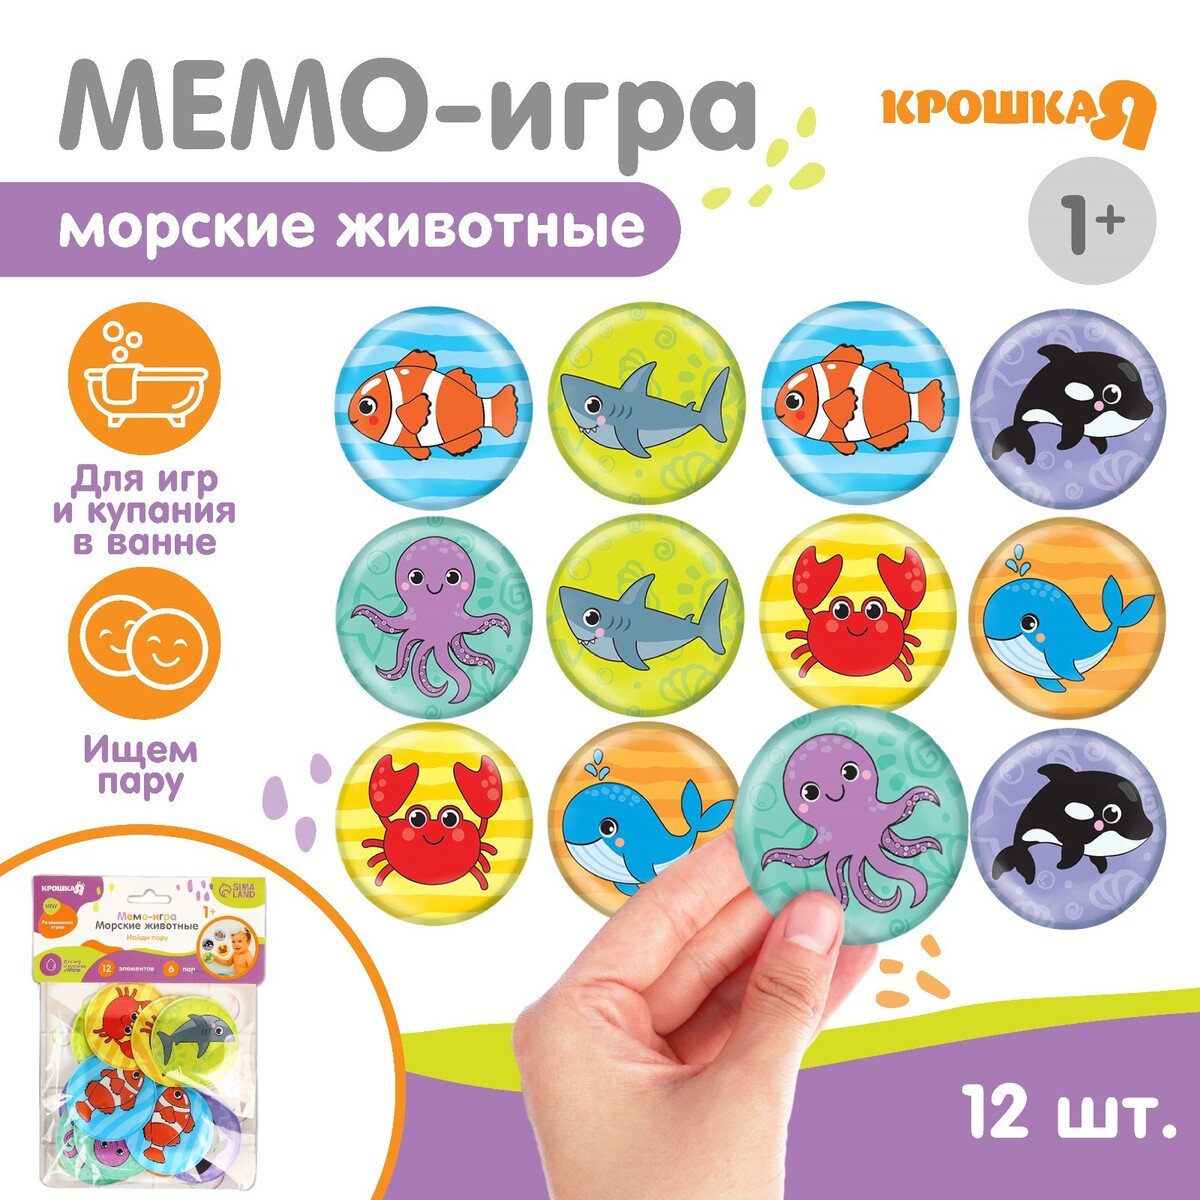 Мемо-игра: развивающие наклейки - присоски многоразовые для игры в ванной